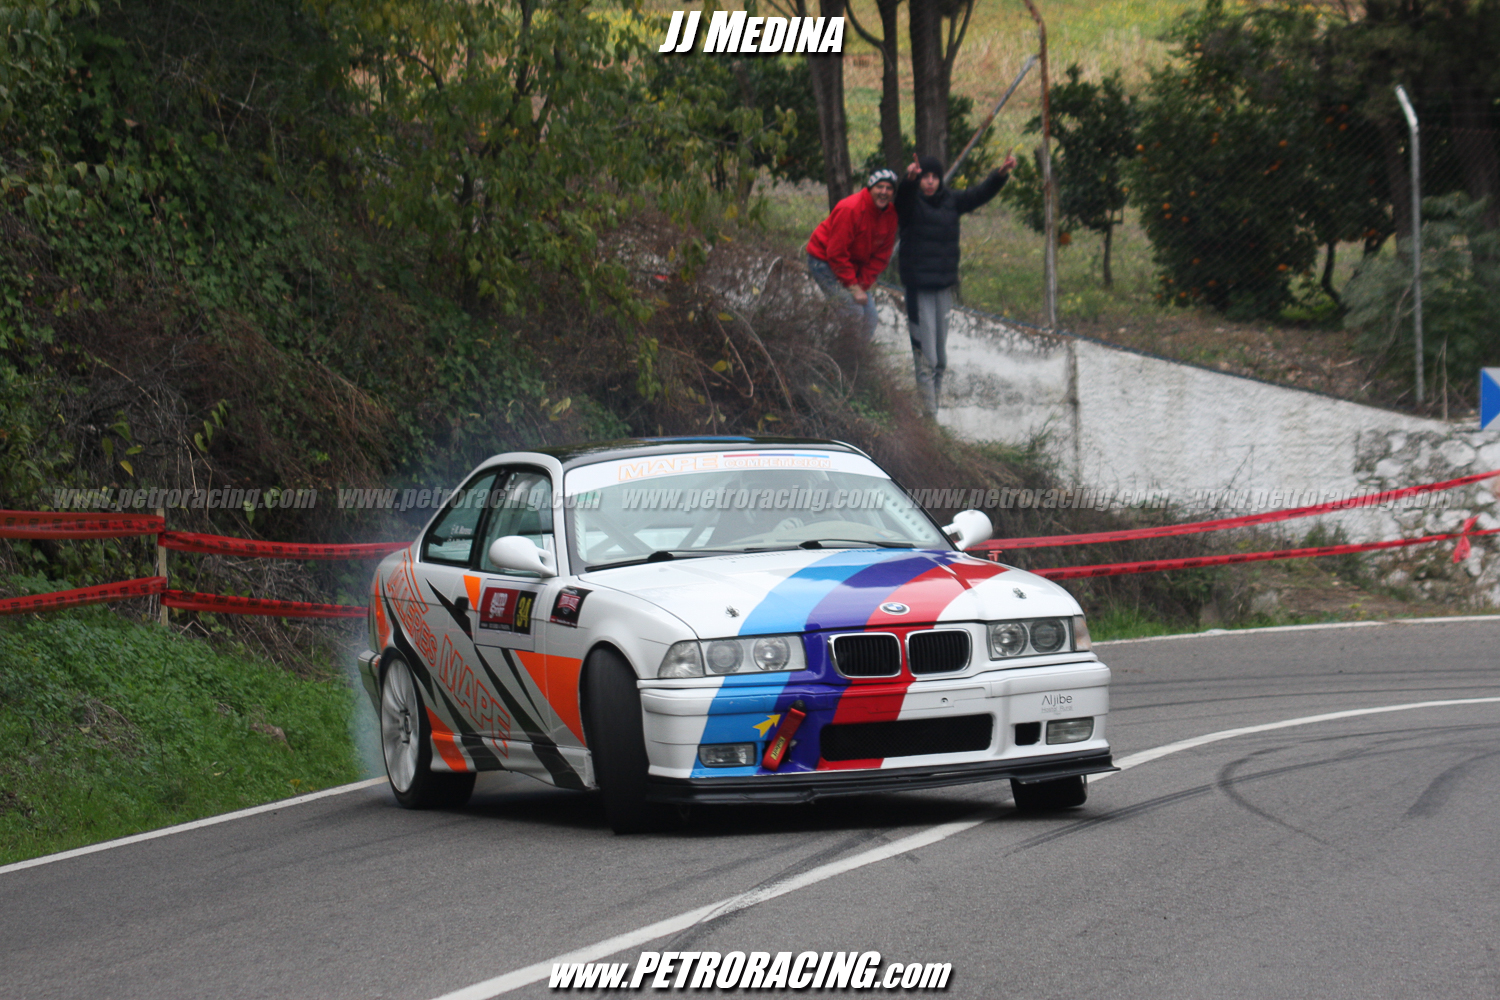 Como es habitual en las subidas andaluzas, Manuel Moreno “Mape” aportó espectáculo con su BMW M3.